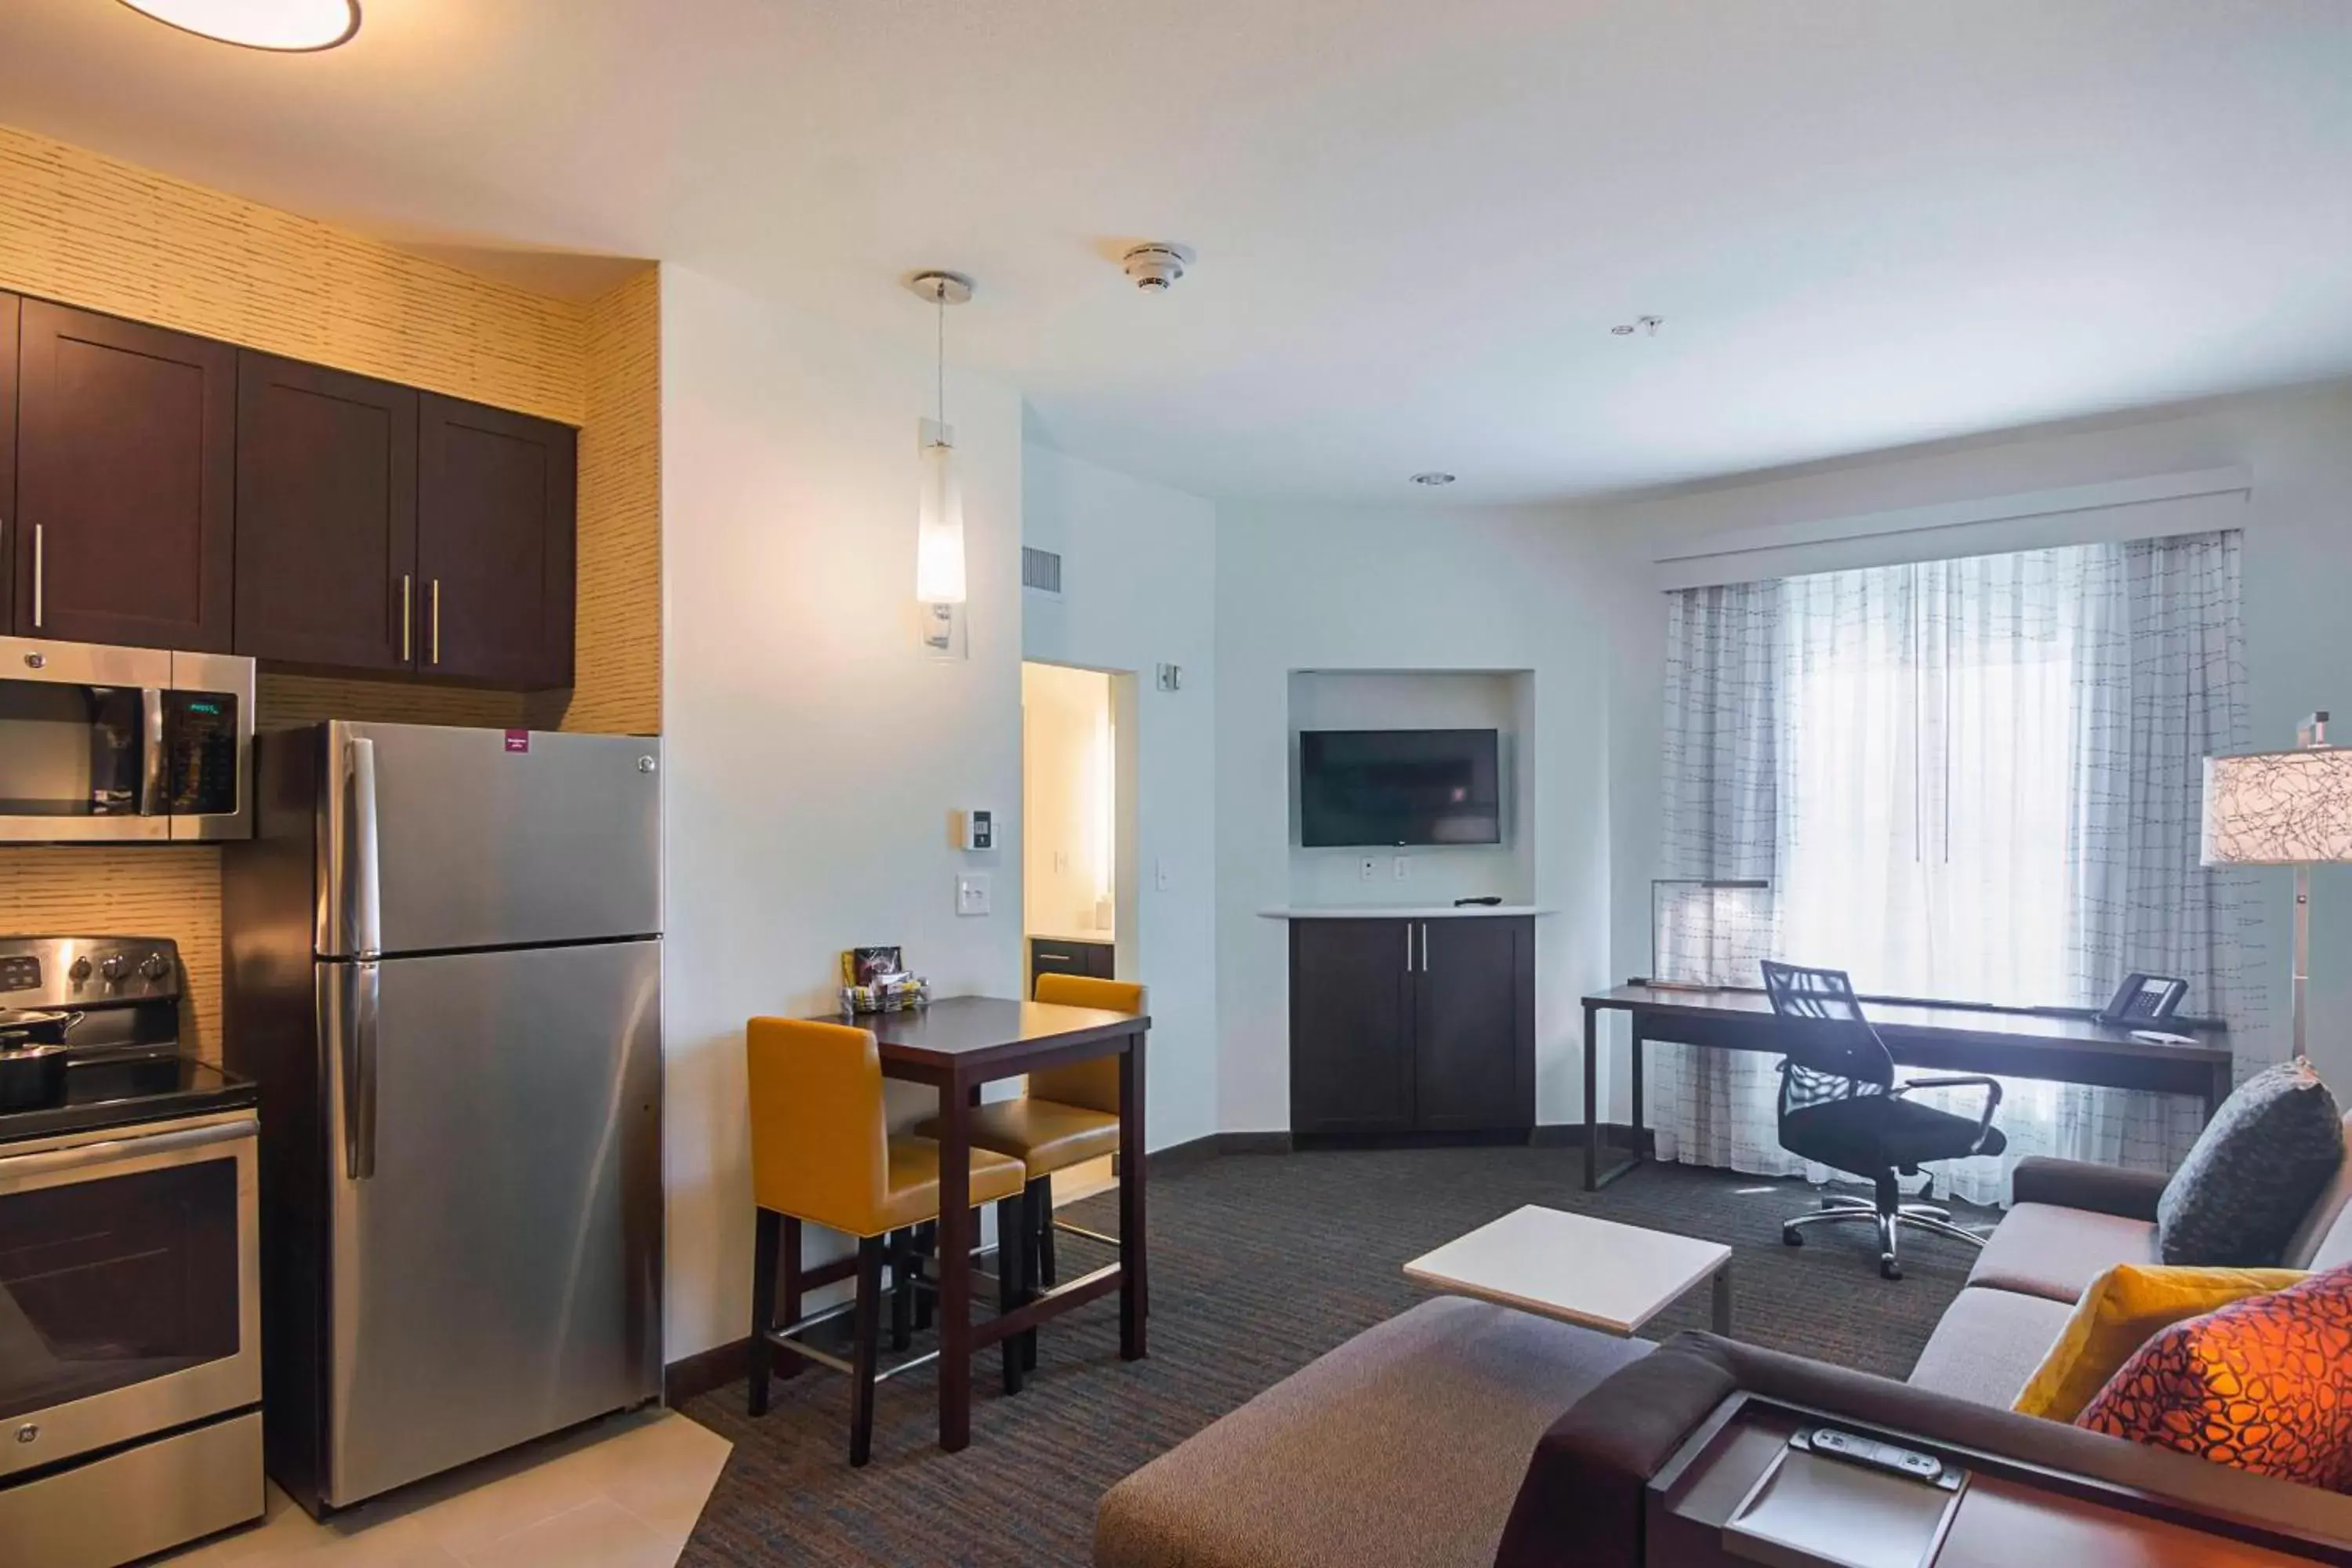 Bedroom, Dining Area in Residence Inn by Marriott Denton